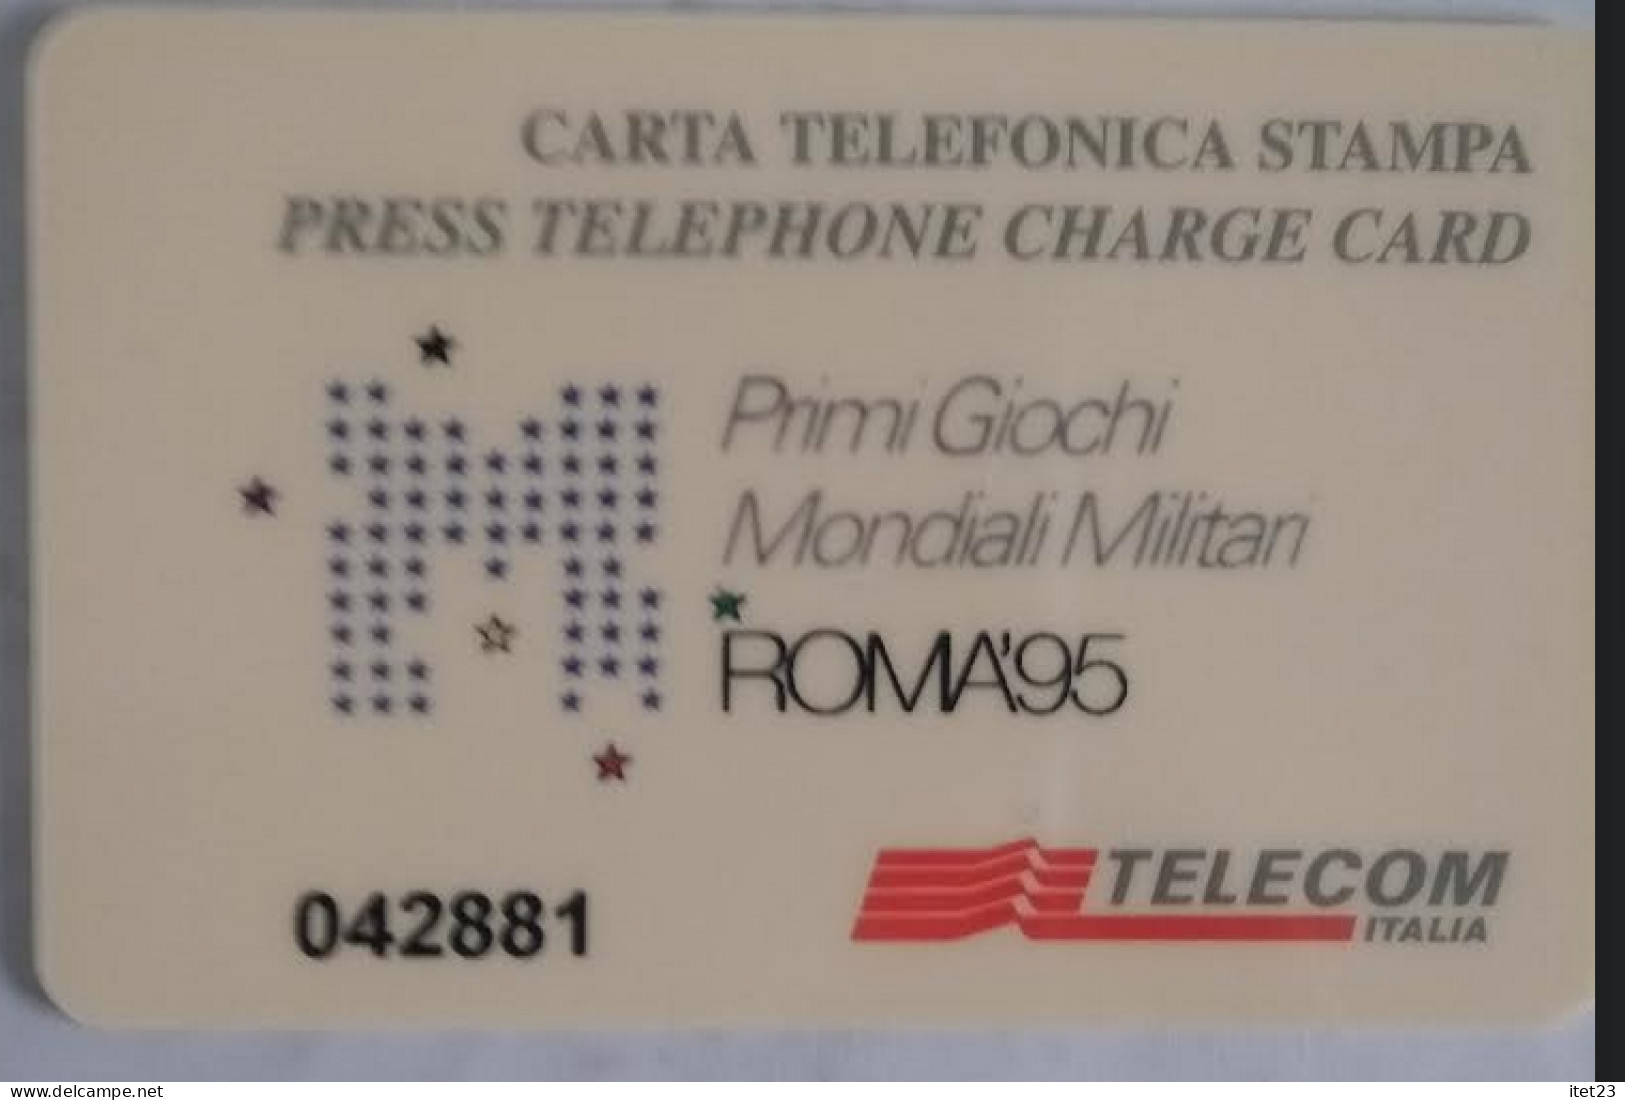 SCHEDA TELEFONICA ITALIANA - USI SPECIALI-STAMPA- ROMA 95- PRIMI GIOCHI MONDIALI MILITARI C&C 4048 - Verzamelingen